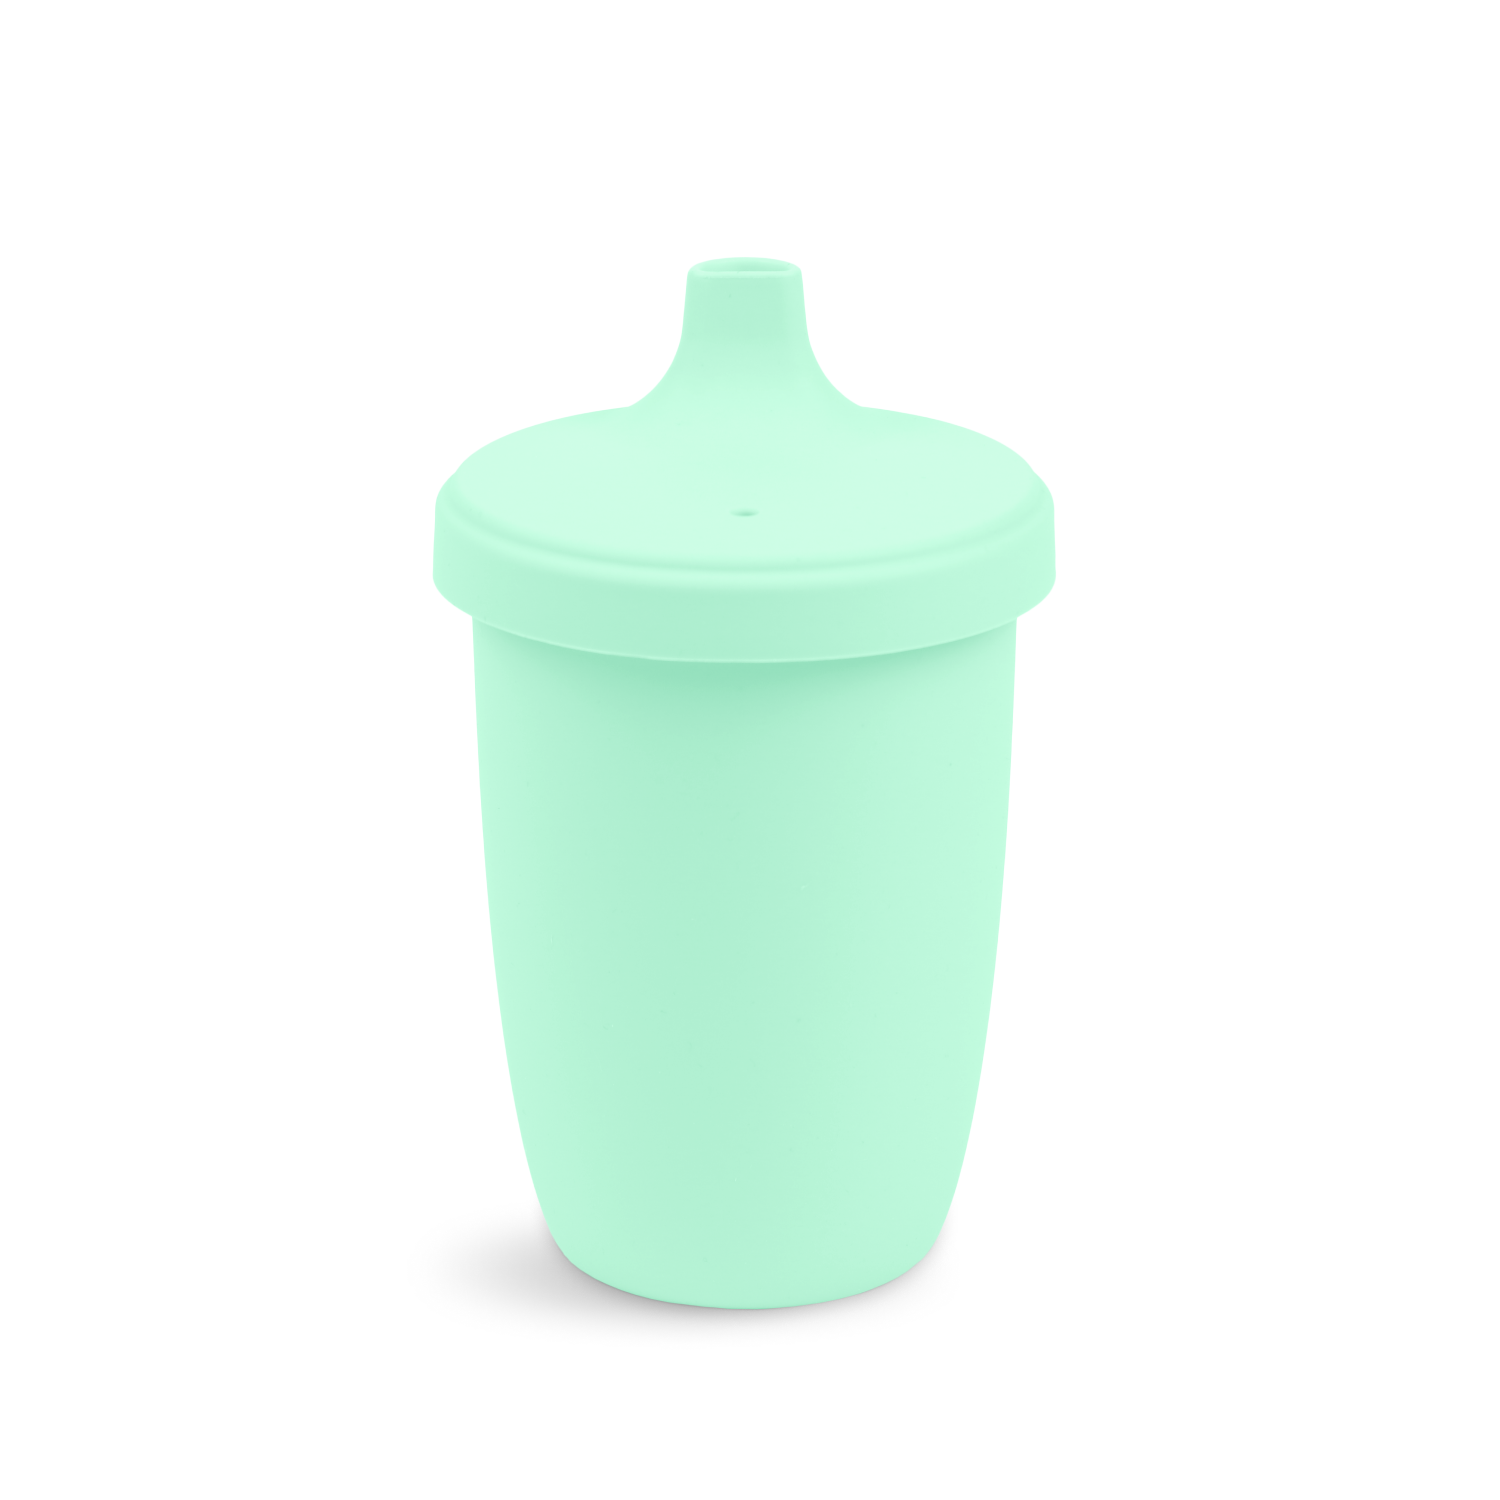 8 oz. Avanchy La Petite Medium Silicone Sippy Cup, 8 oz. Cup / Green